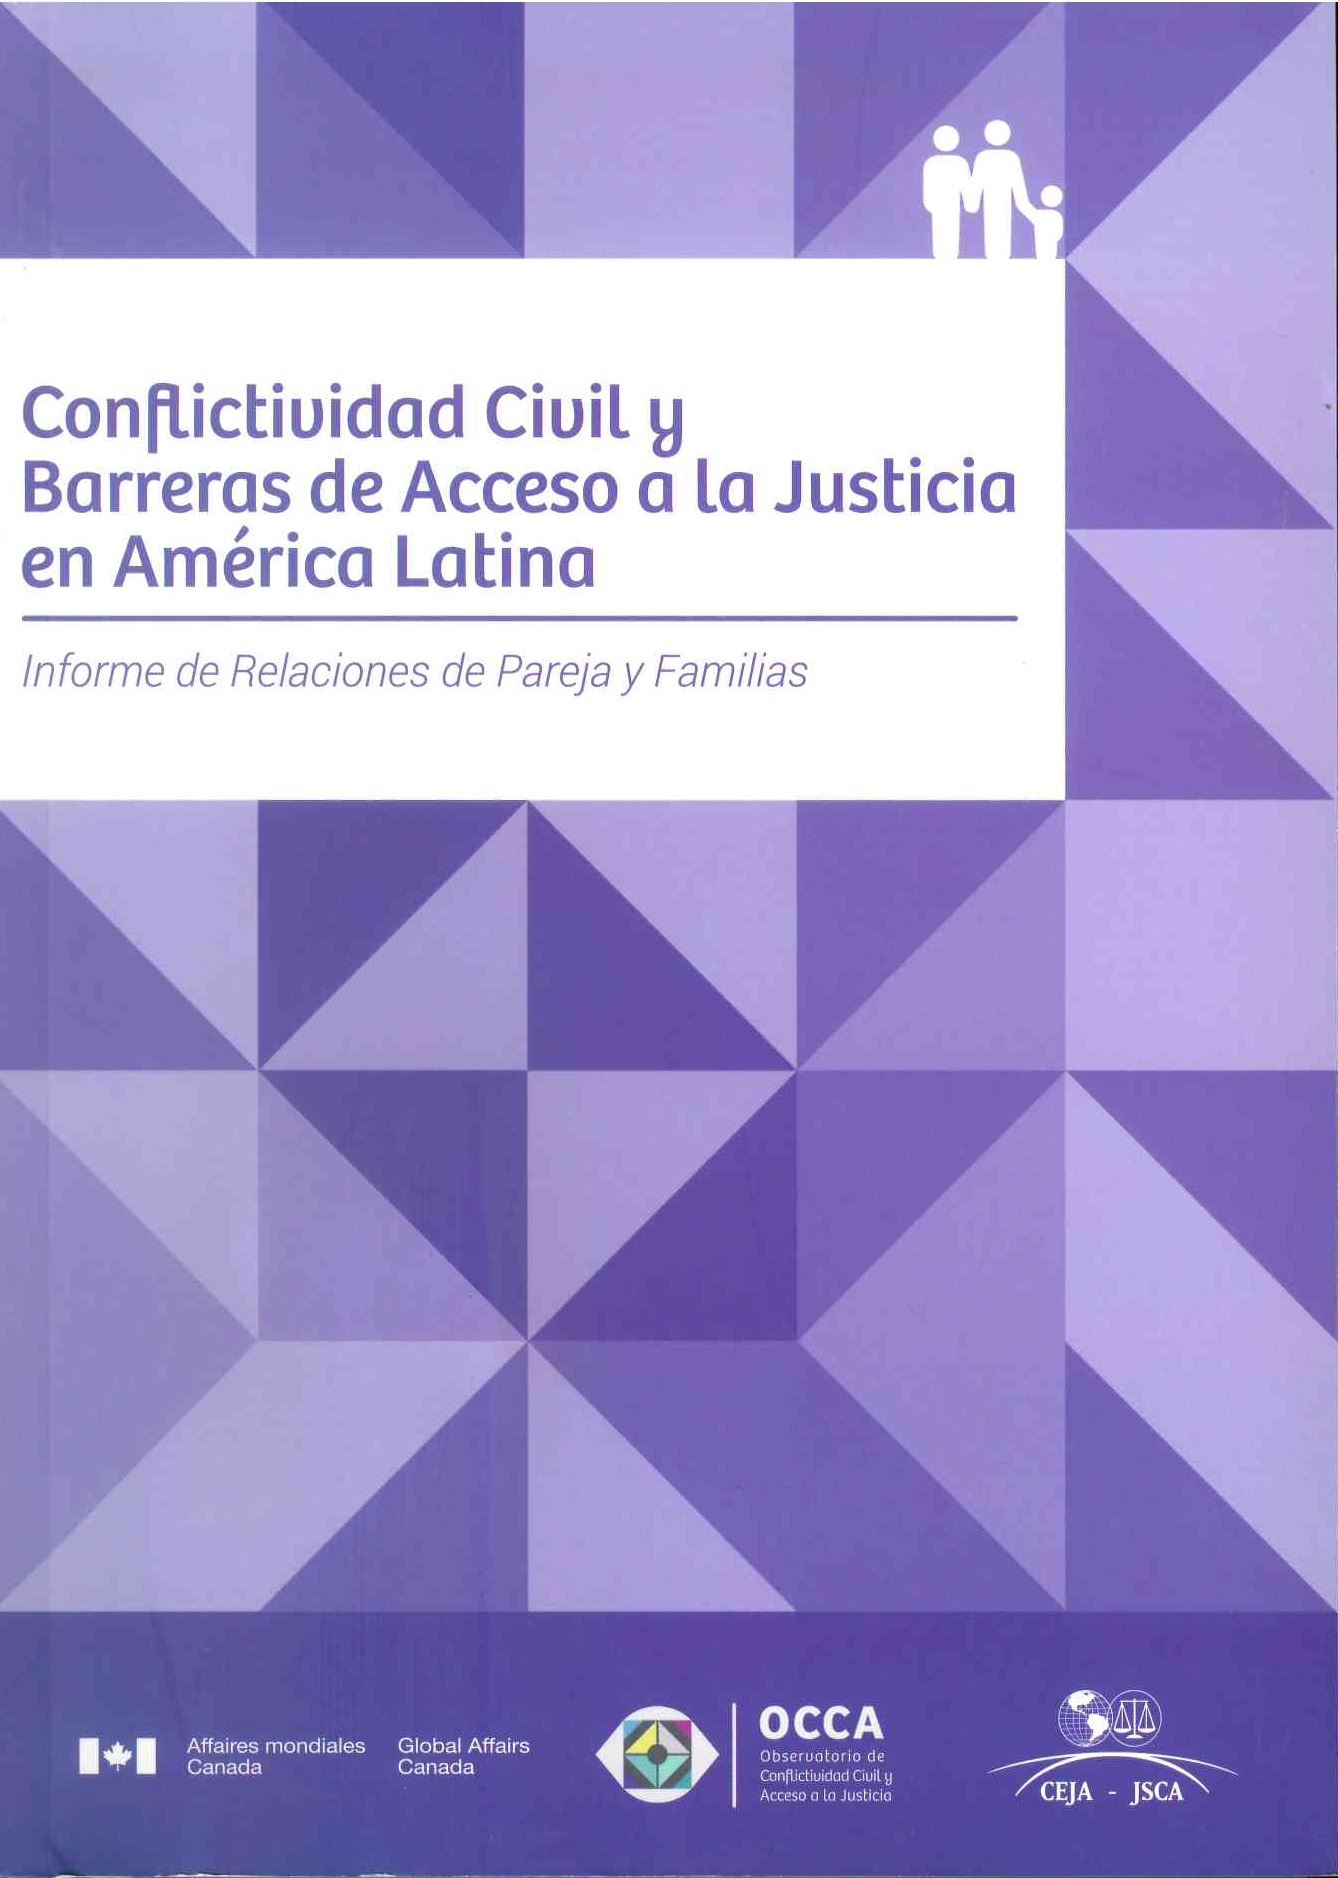 Conflictividad civil y barreras de acceso a la justicia en América Latina: Informe de relaciones de parejas y familias.